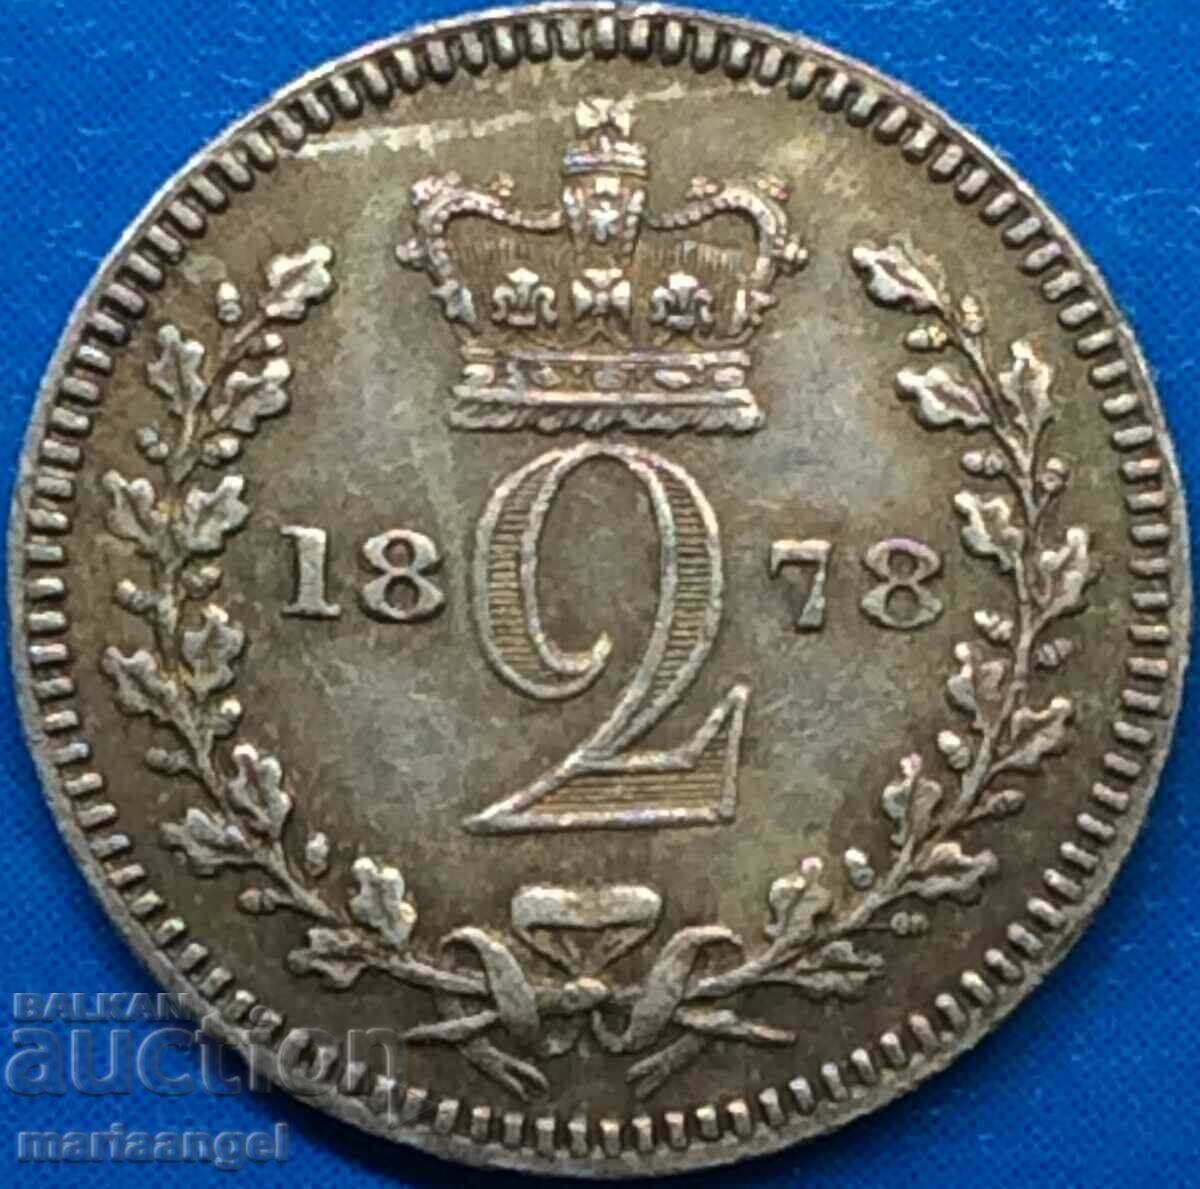 Μεγάλη Βρετανία 2 Pence 1878 Moundy Victoria RARE Silver